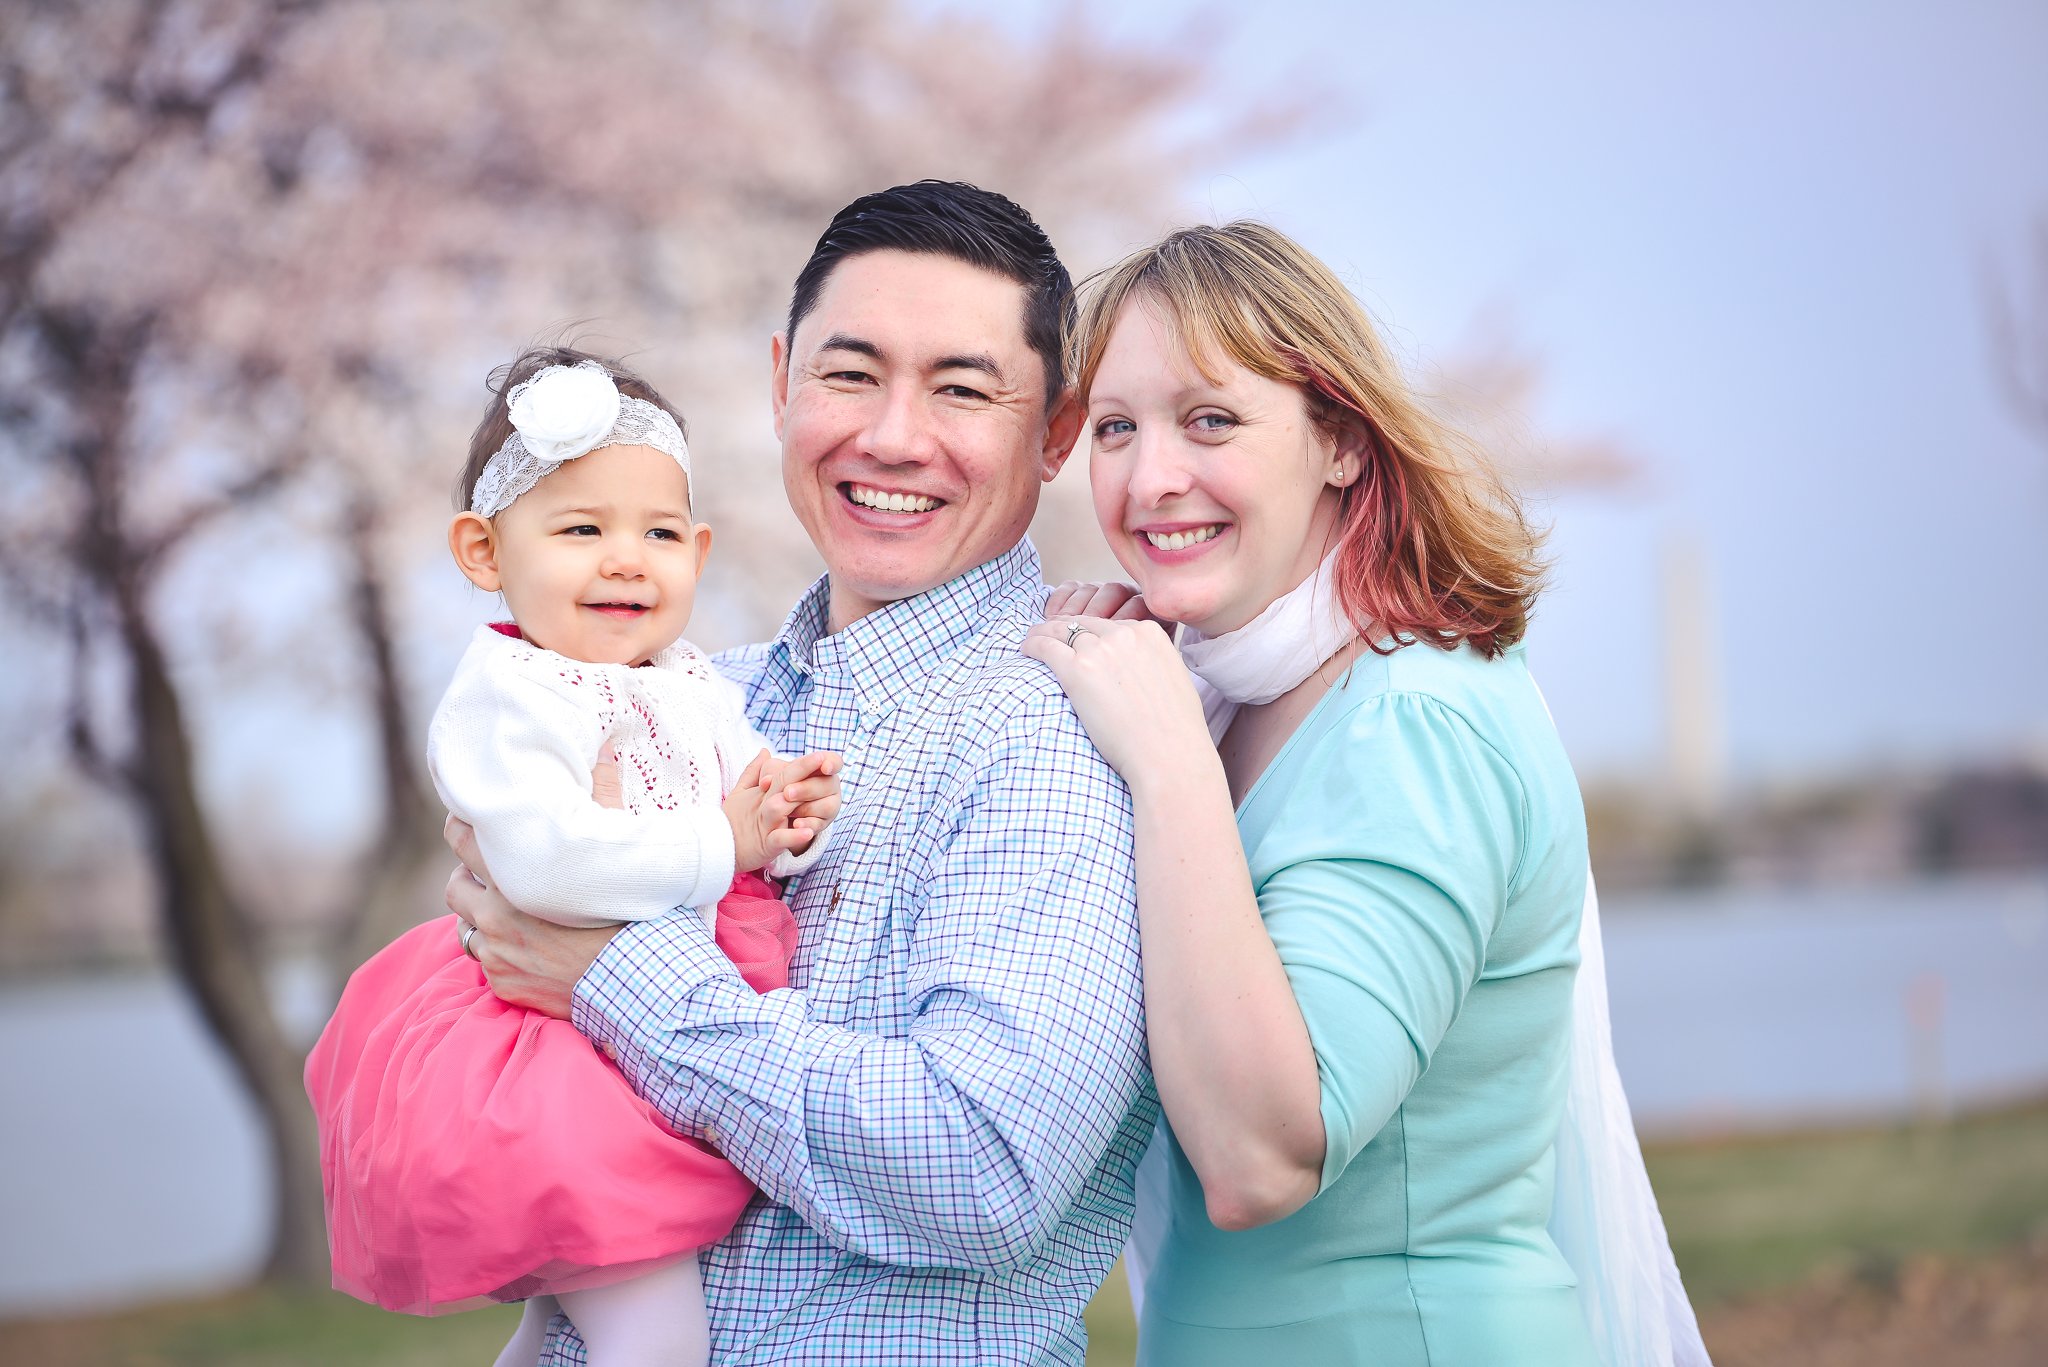 Family photo session - cherry blossom season in Washington DC - DC MD VA Family Photographer